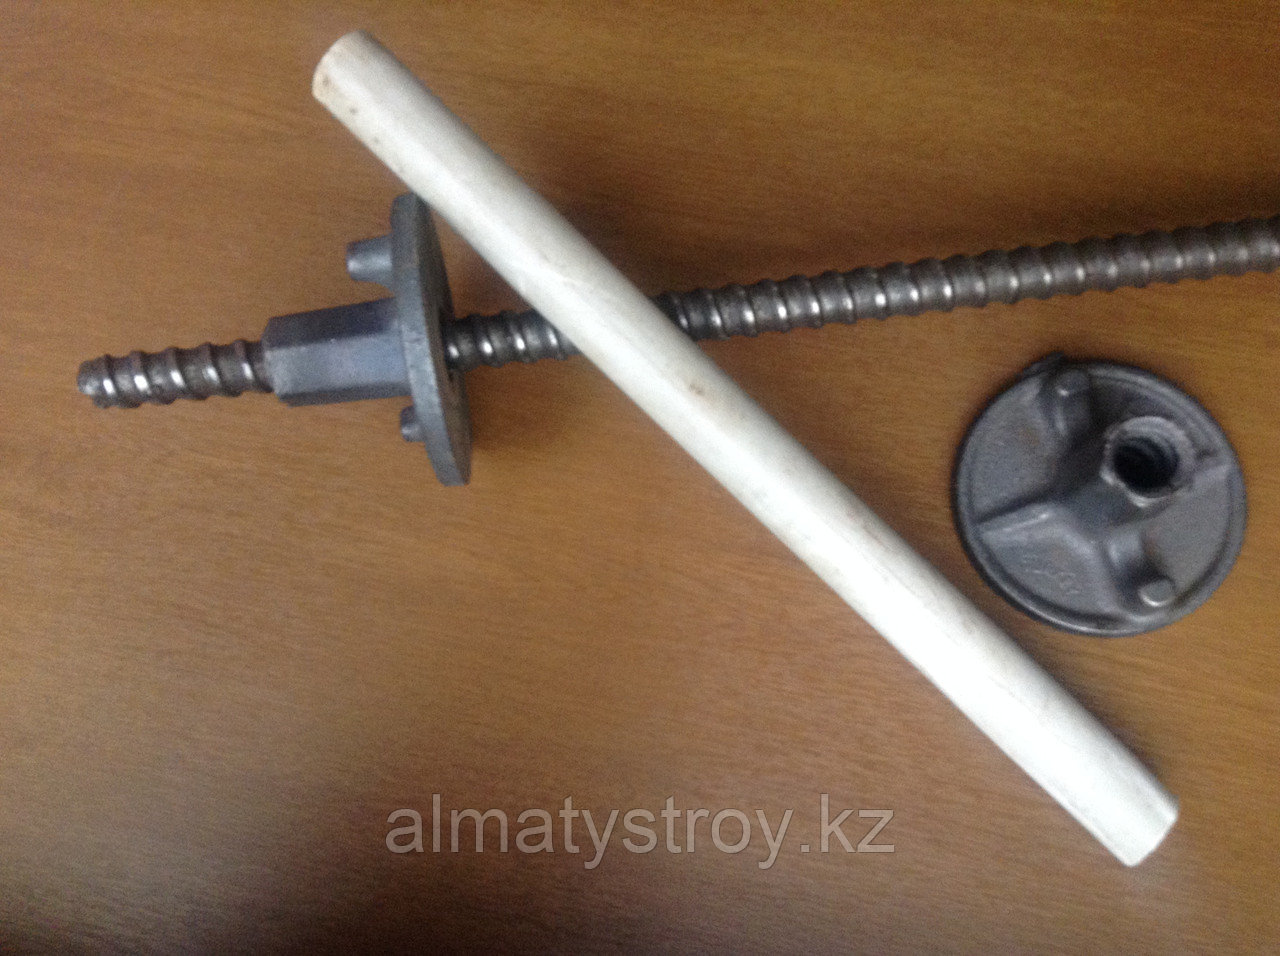 Пластиковые трубы для тайротов (пр-во Турция)